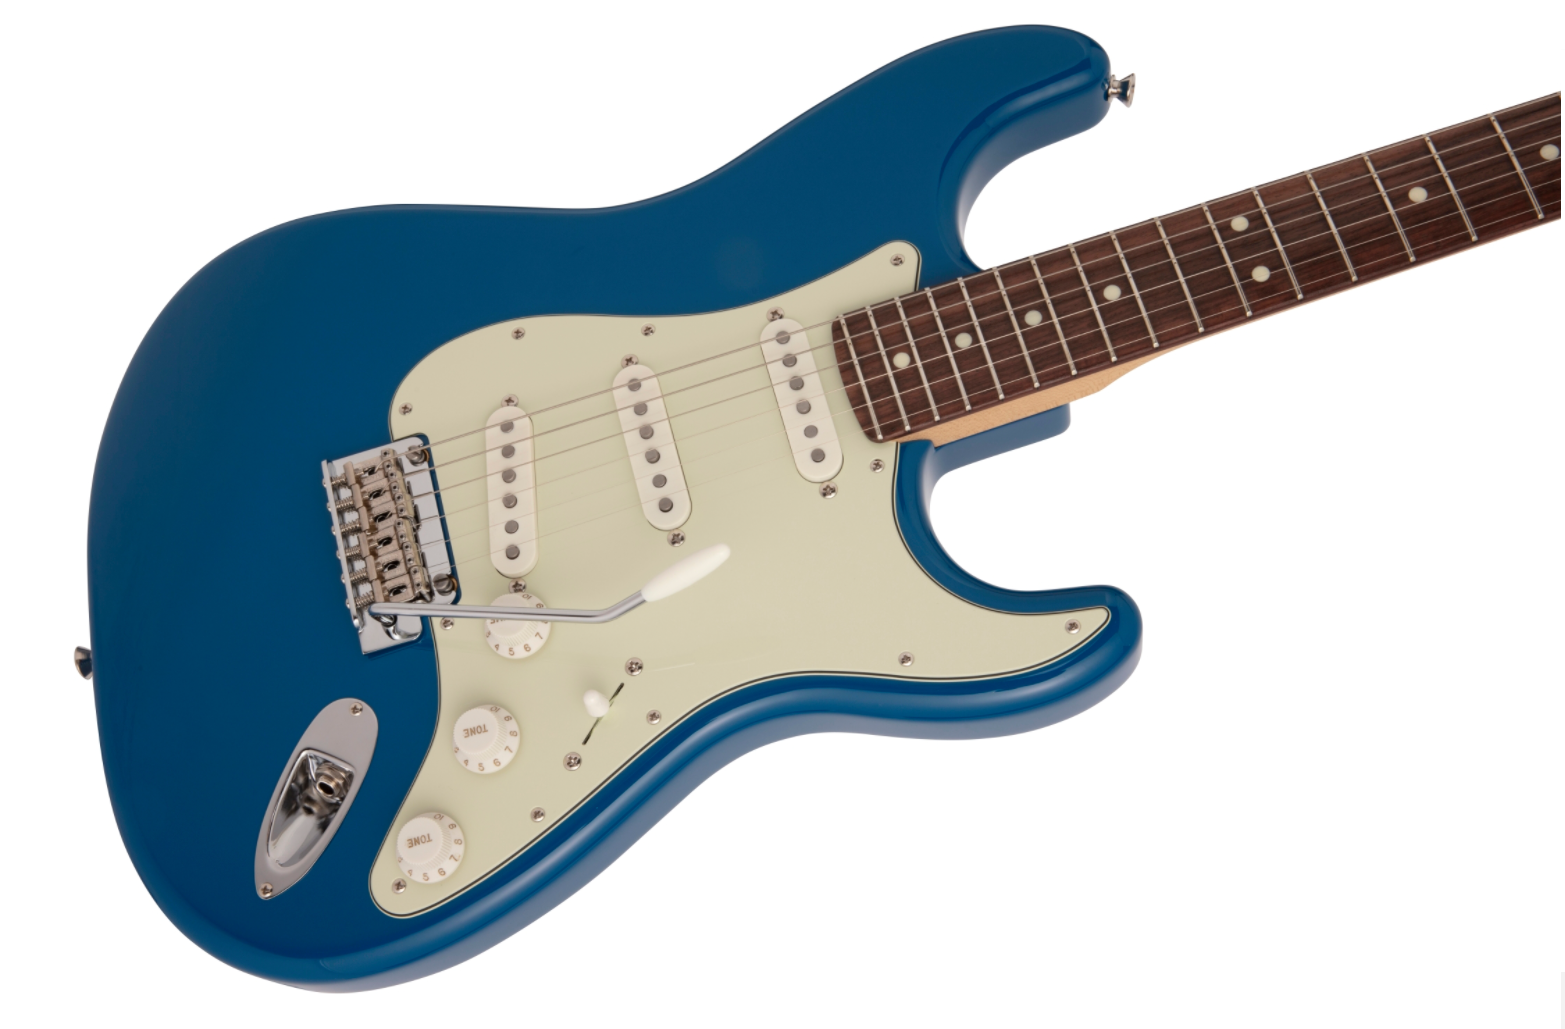  Fender HYBRID II STRATOCASTER® 